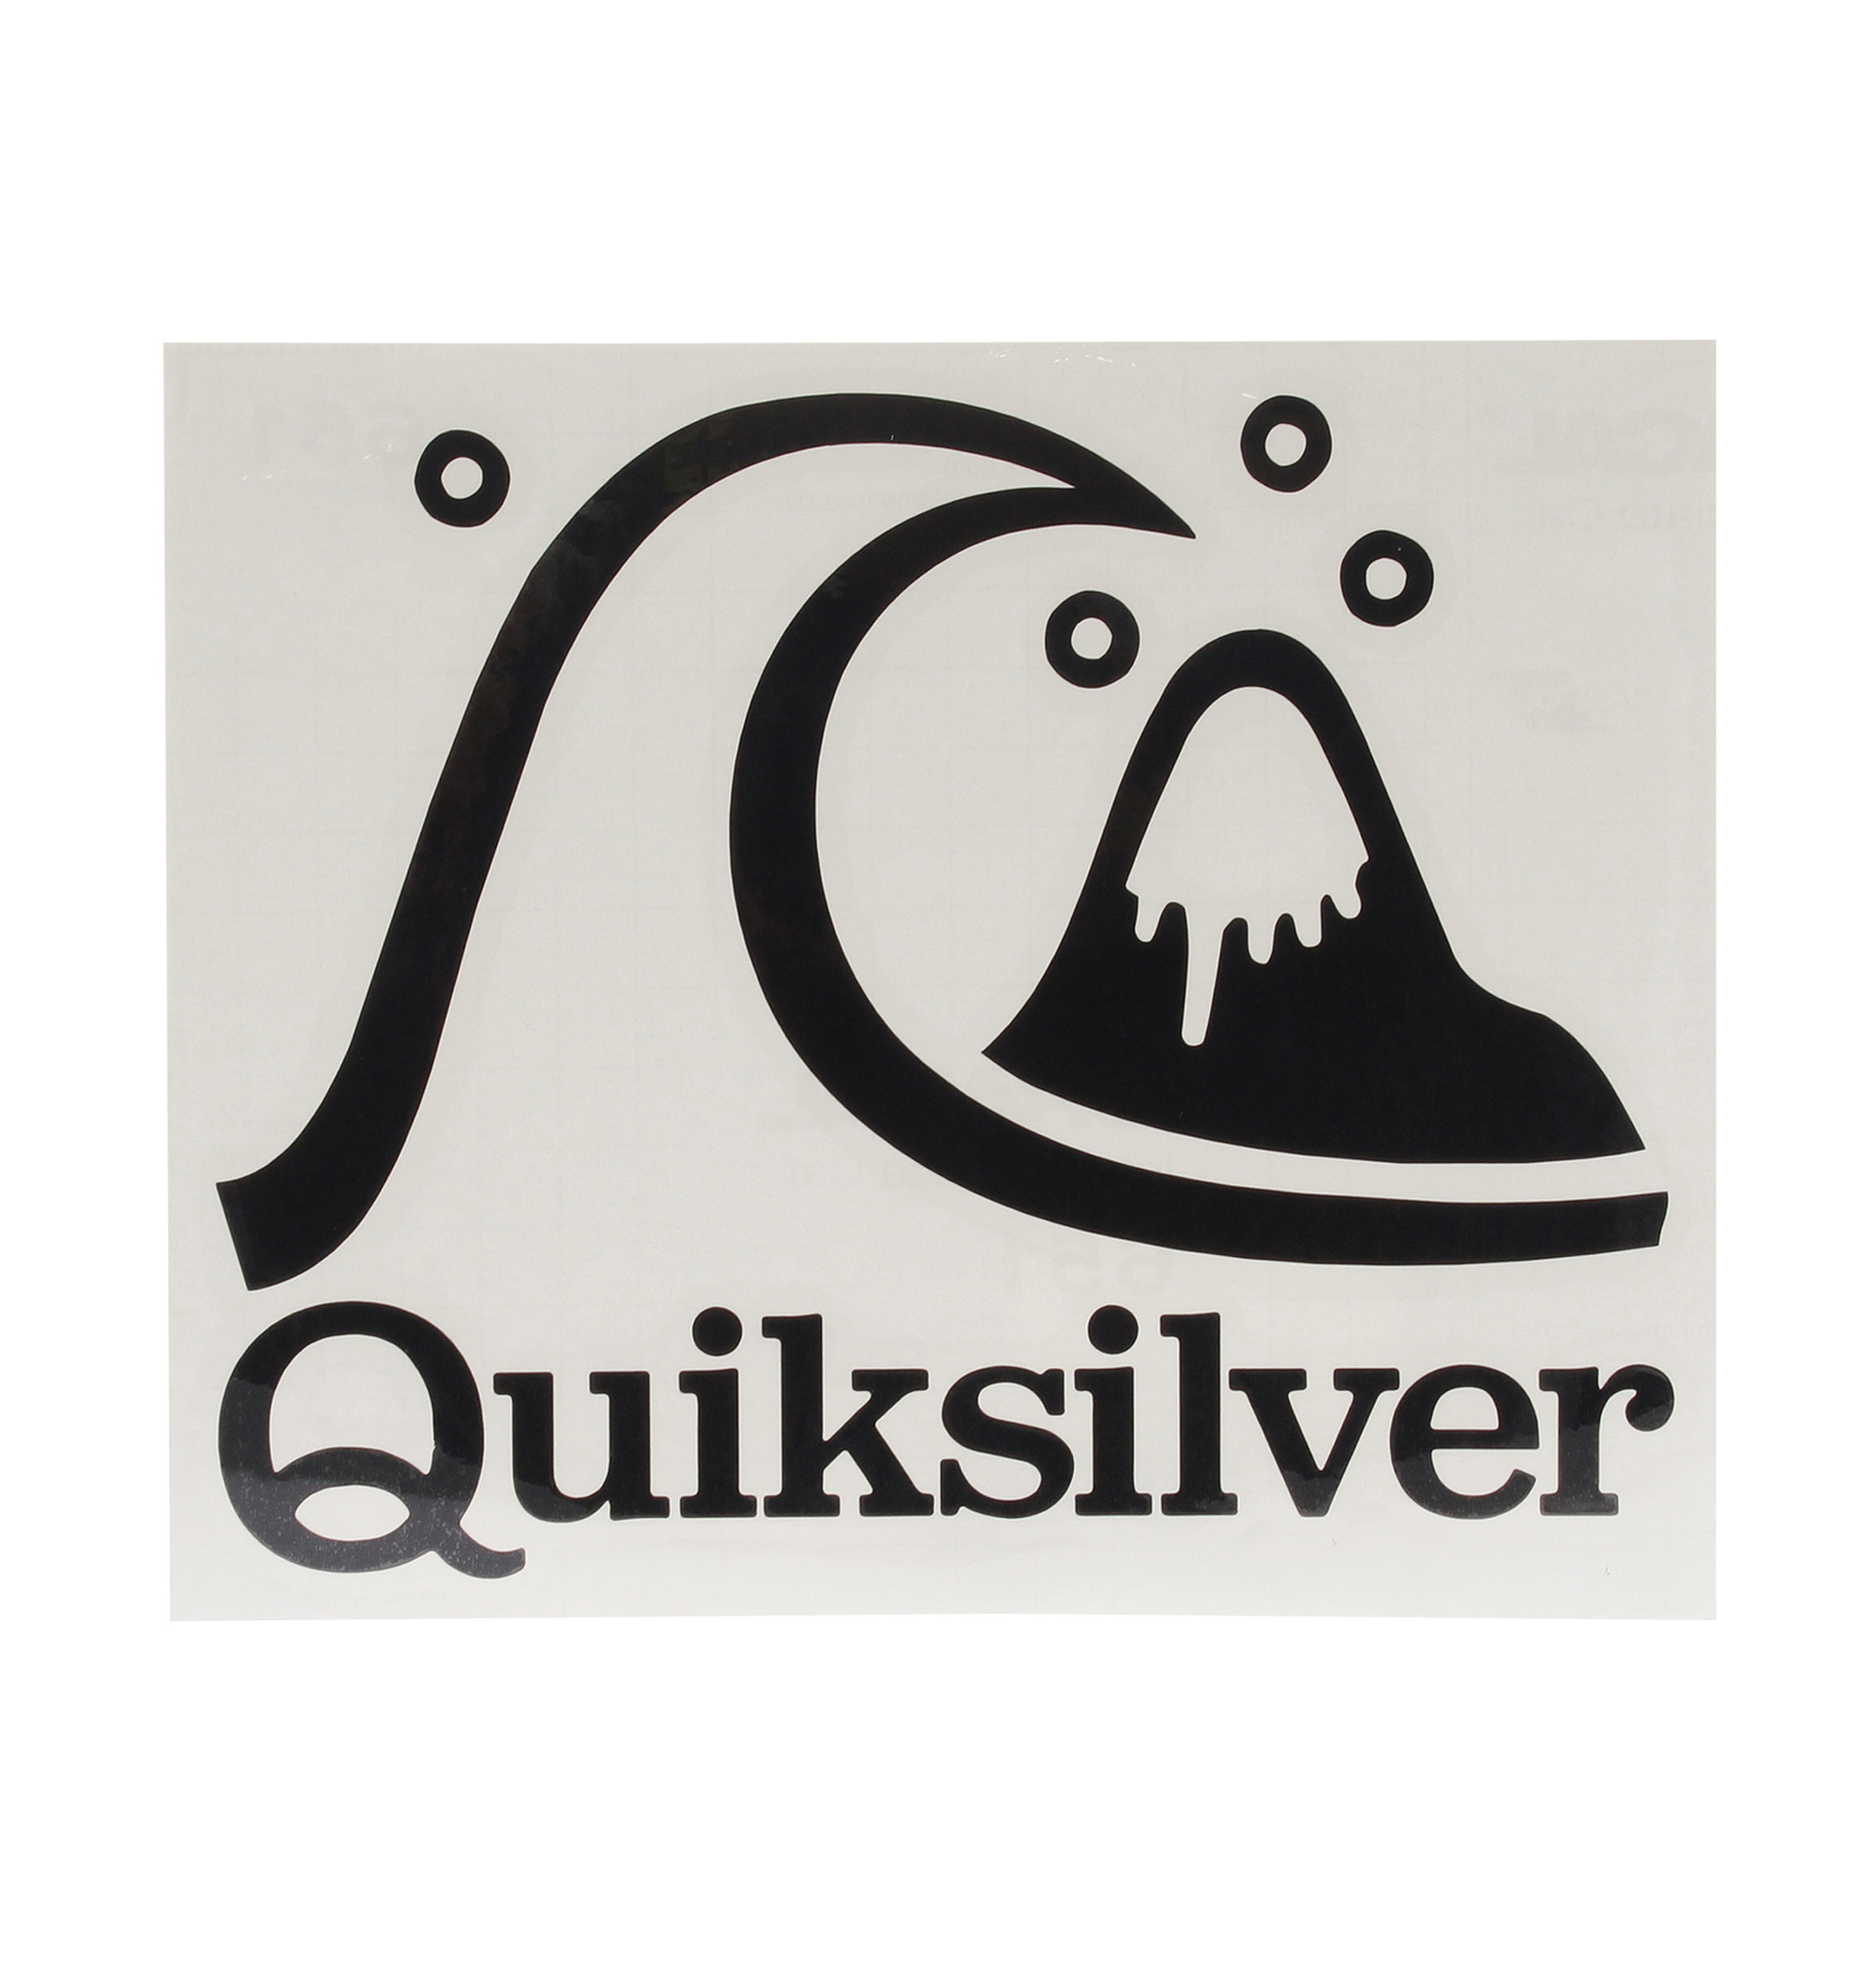 ＜Quiksilver＞ BUBBLE STICKER ブランドアイコンをデザインしたステッカー画像